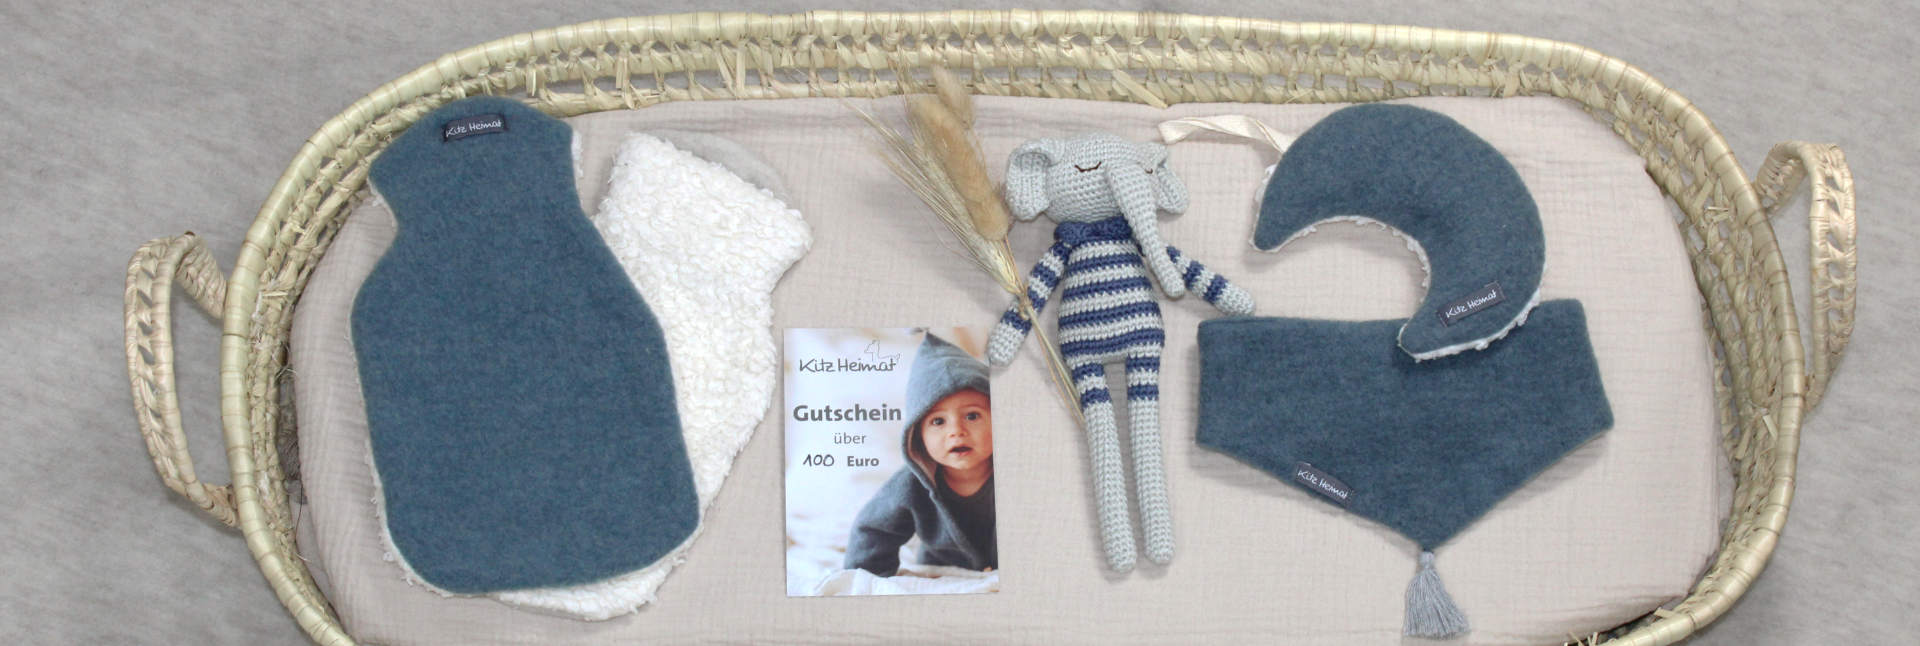 Geschenkideen von Kitzheimat liegen in einem Babykörbchen, wie z.B. Wärmflaschen, Gutschein, Kuscheltier und Wollschal.